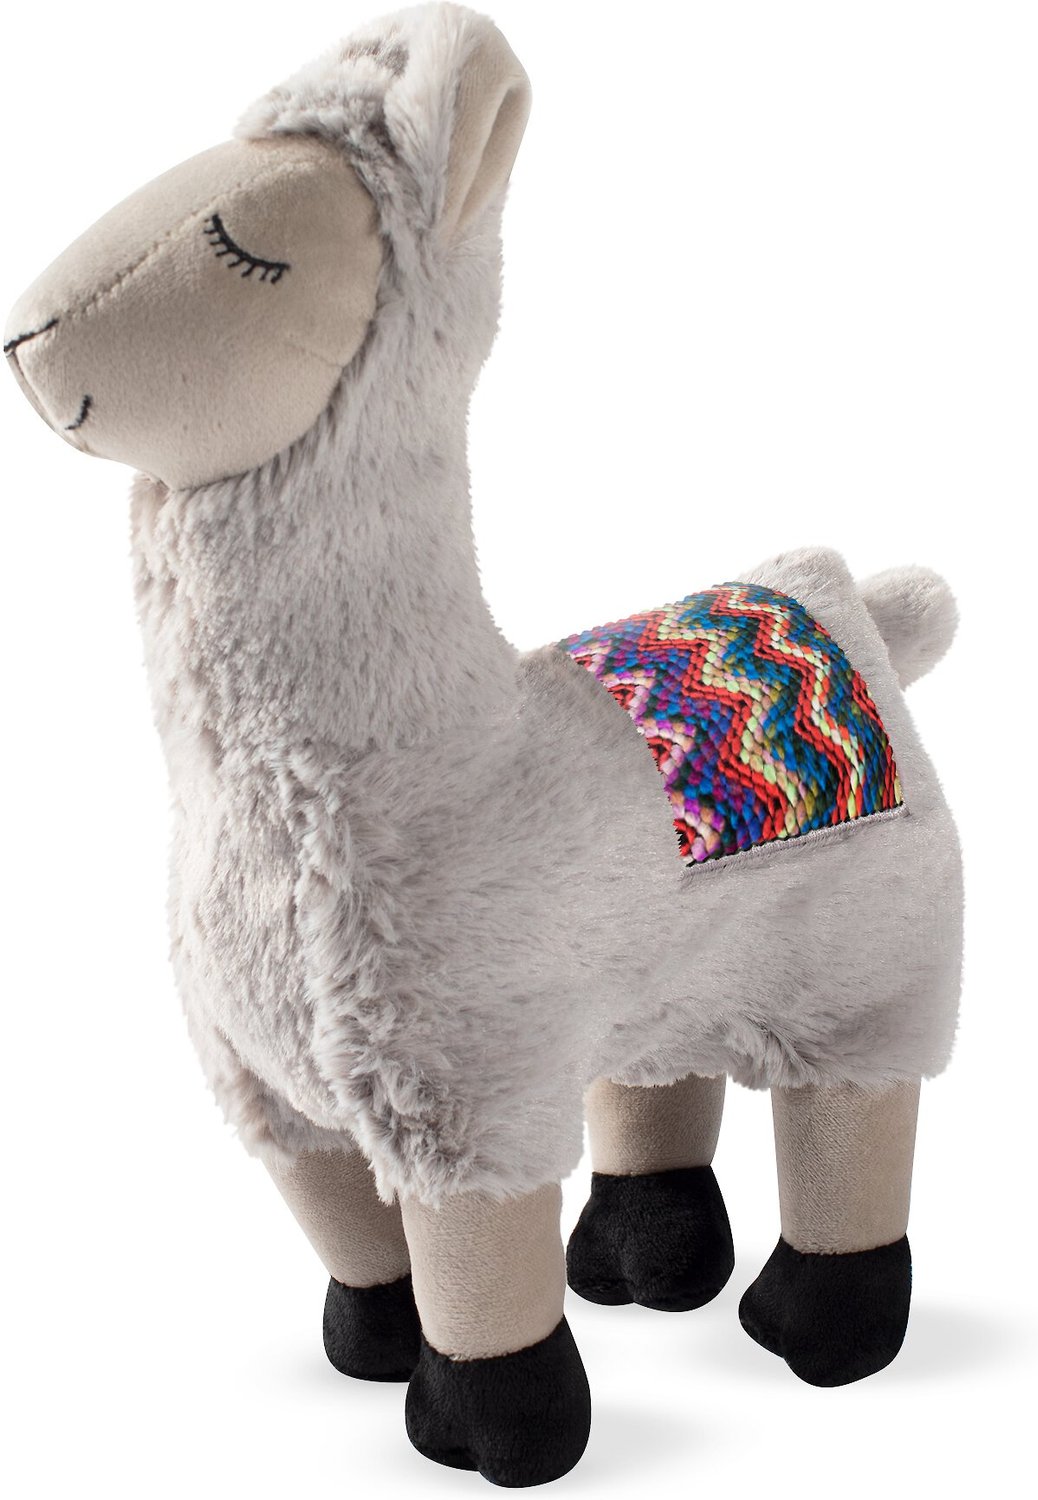 stuffed llama dog toy